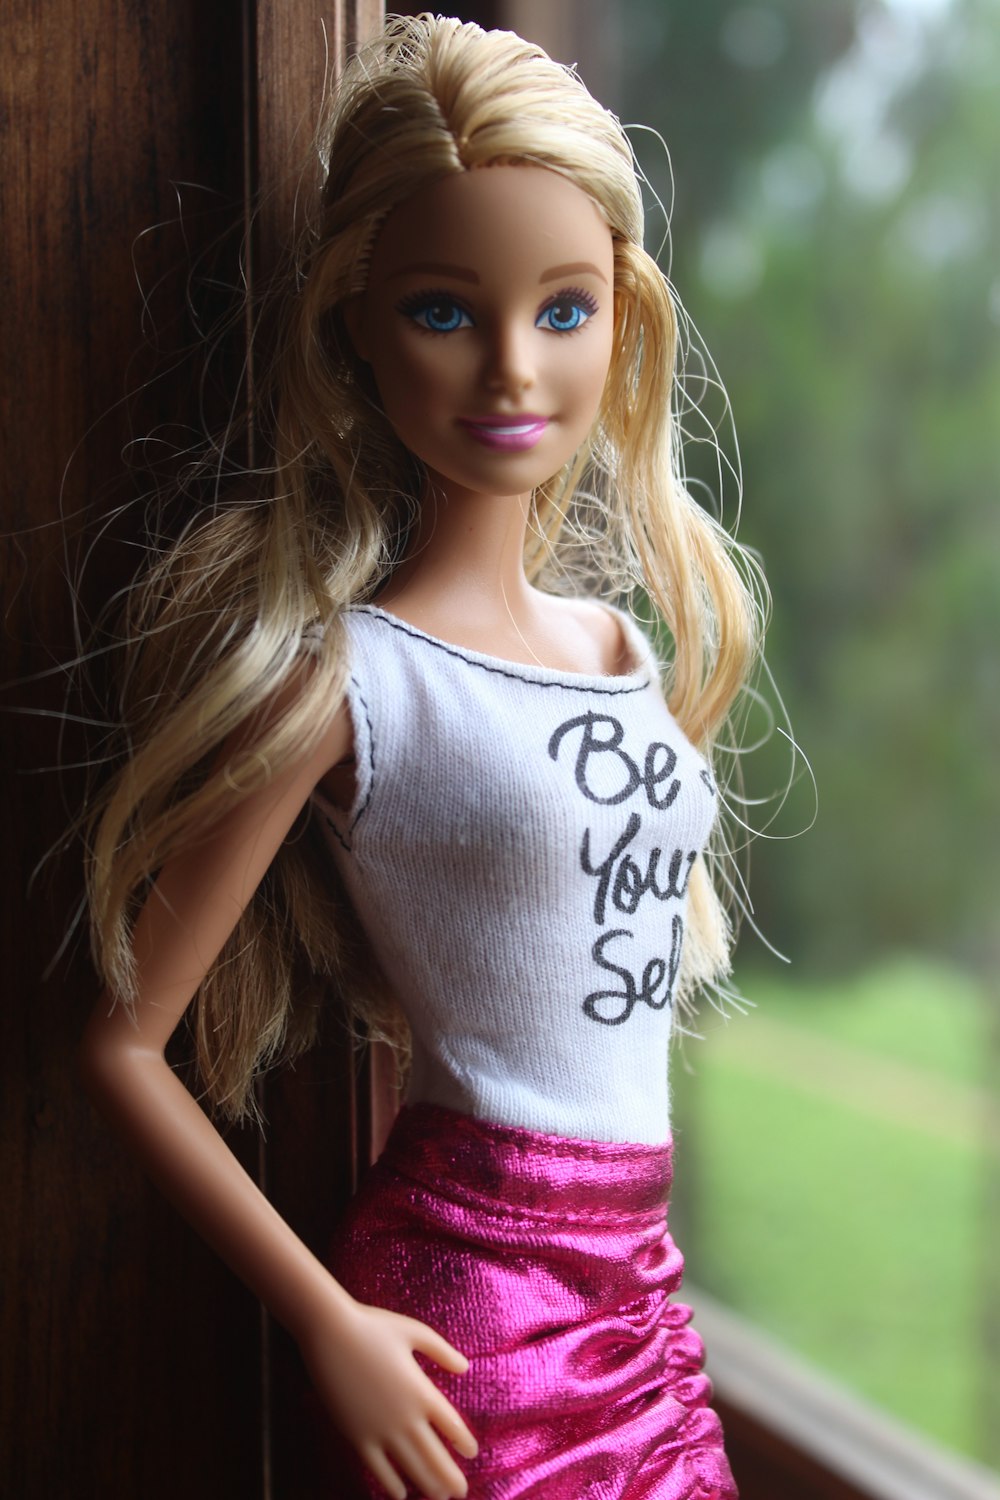 Blonde-haitred barbie doll photo photo – Free Doll Image on Unsplash